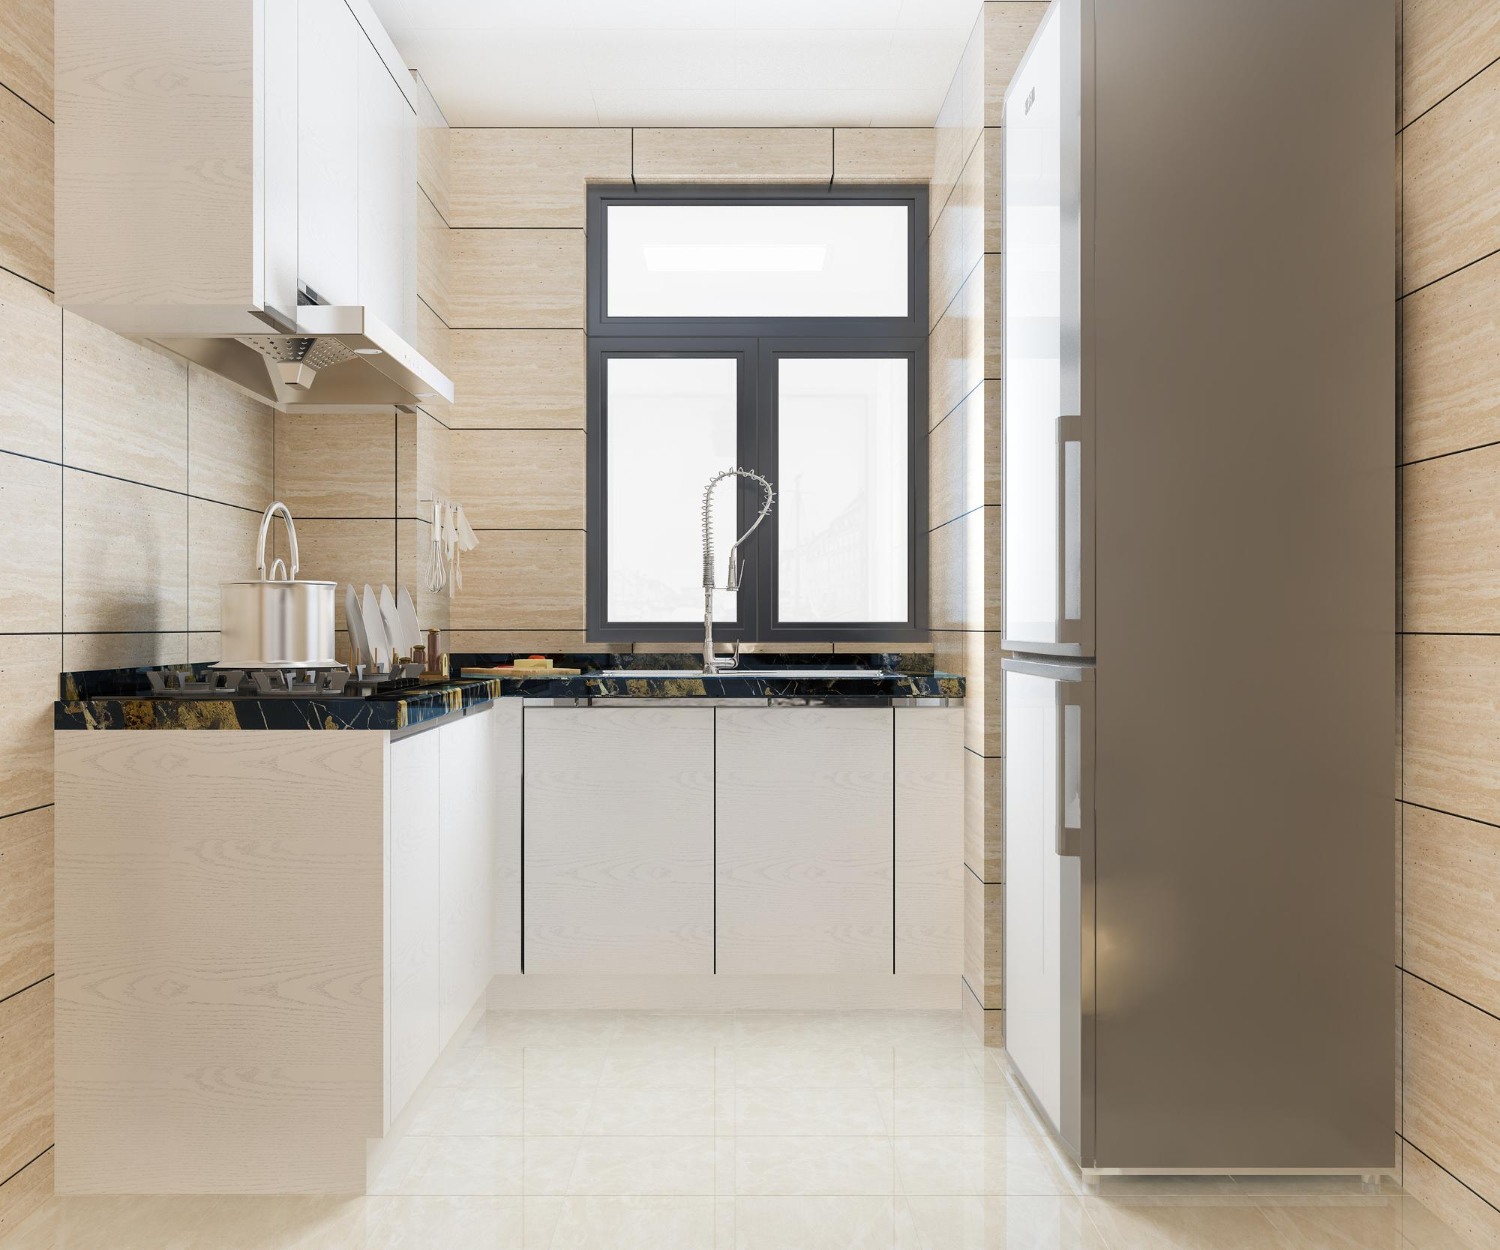 Manfaatkan lorong rumah dengan model dapur yang memberi kesan hangat.